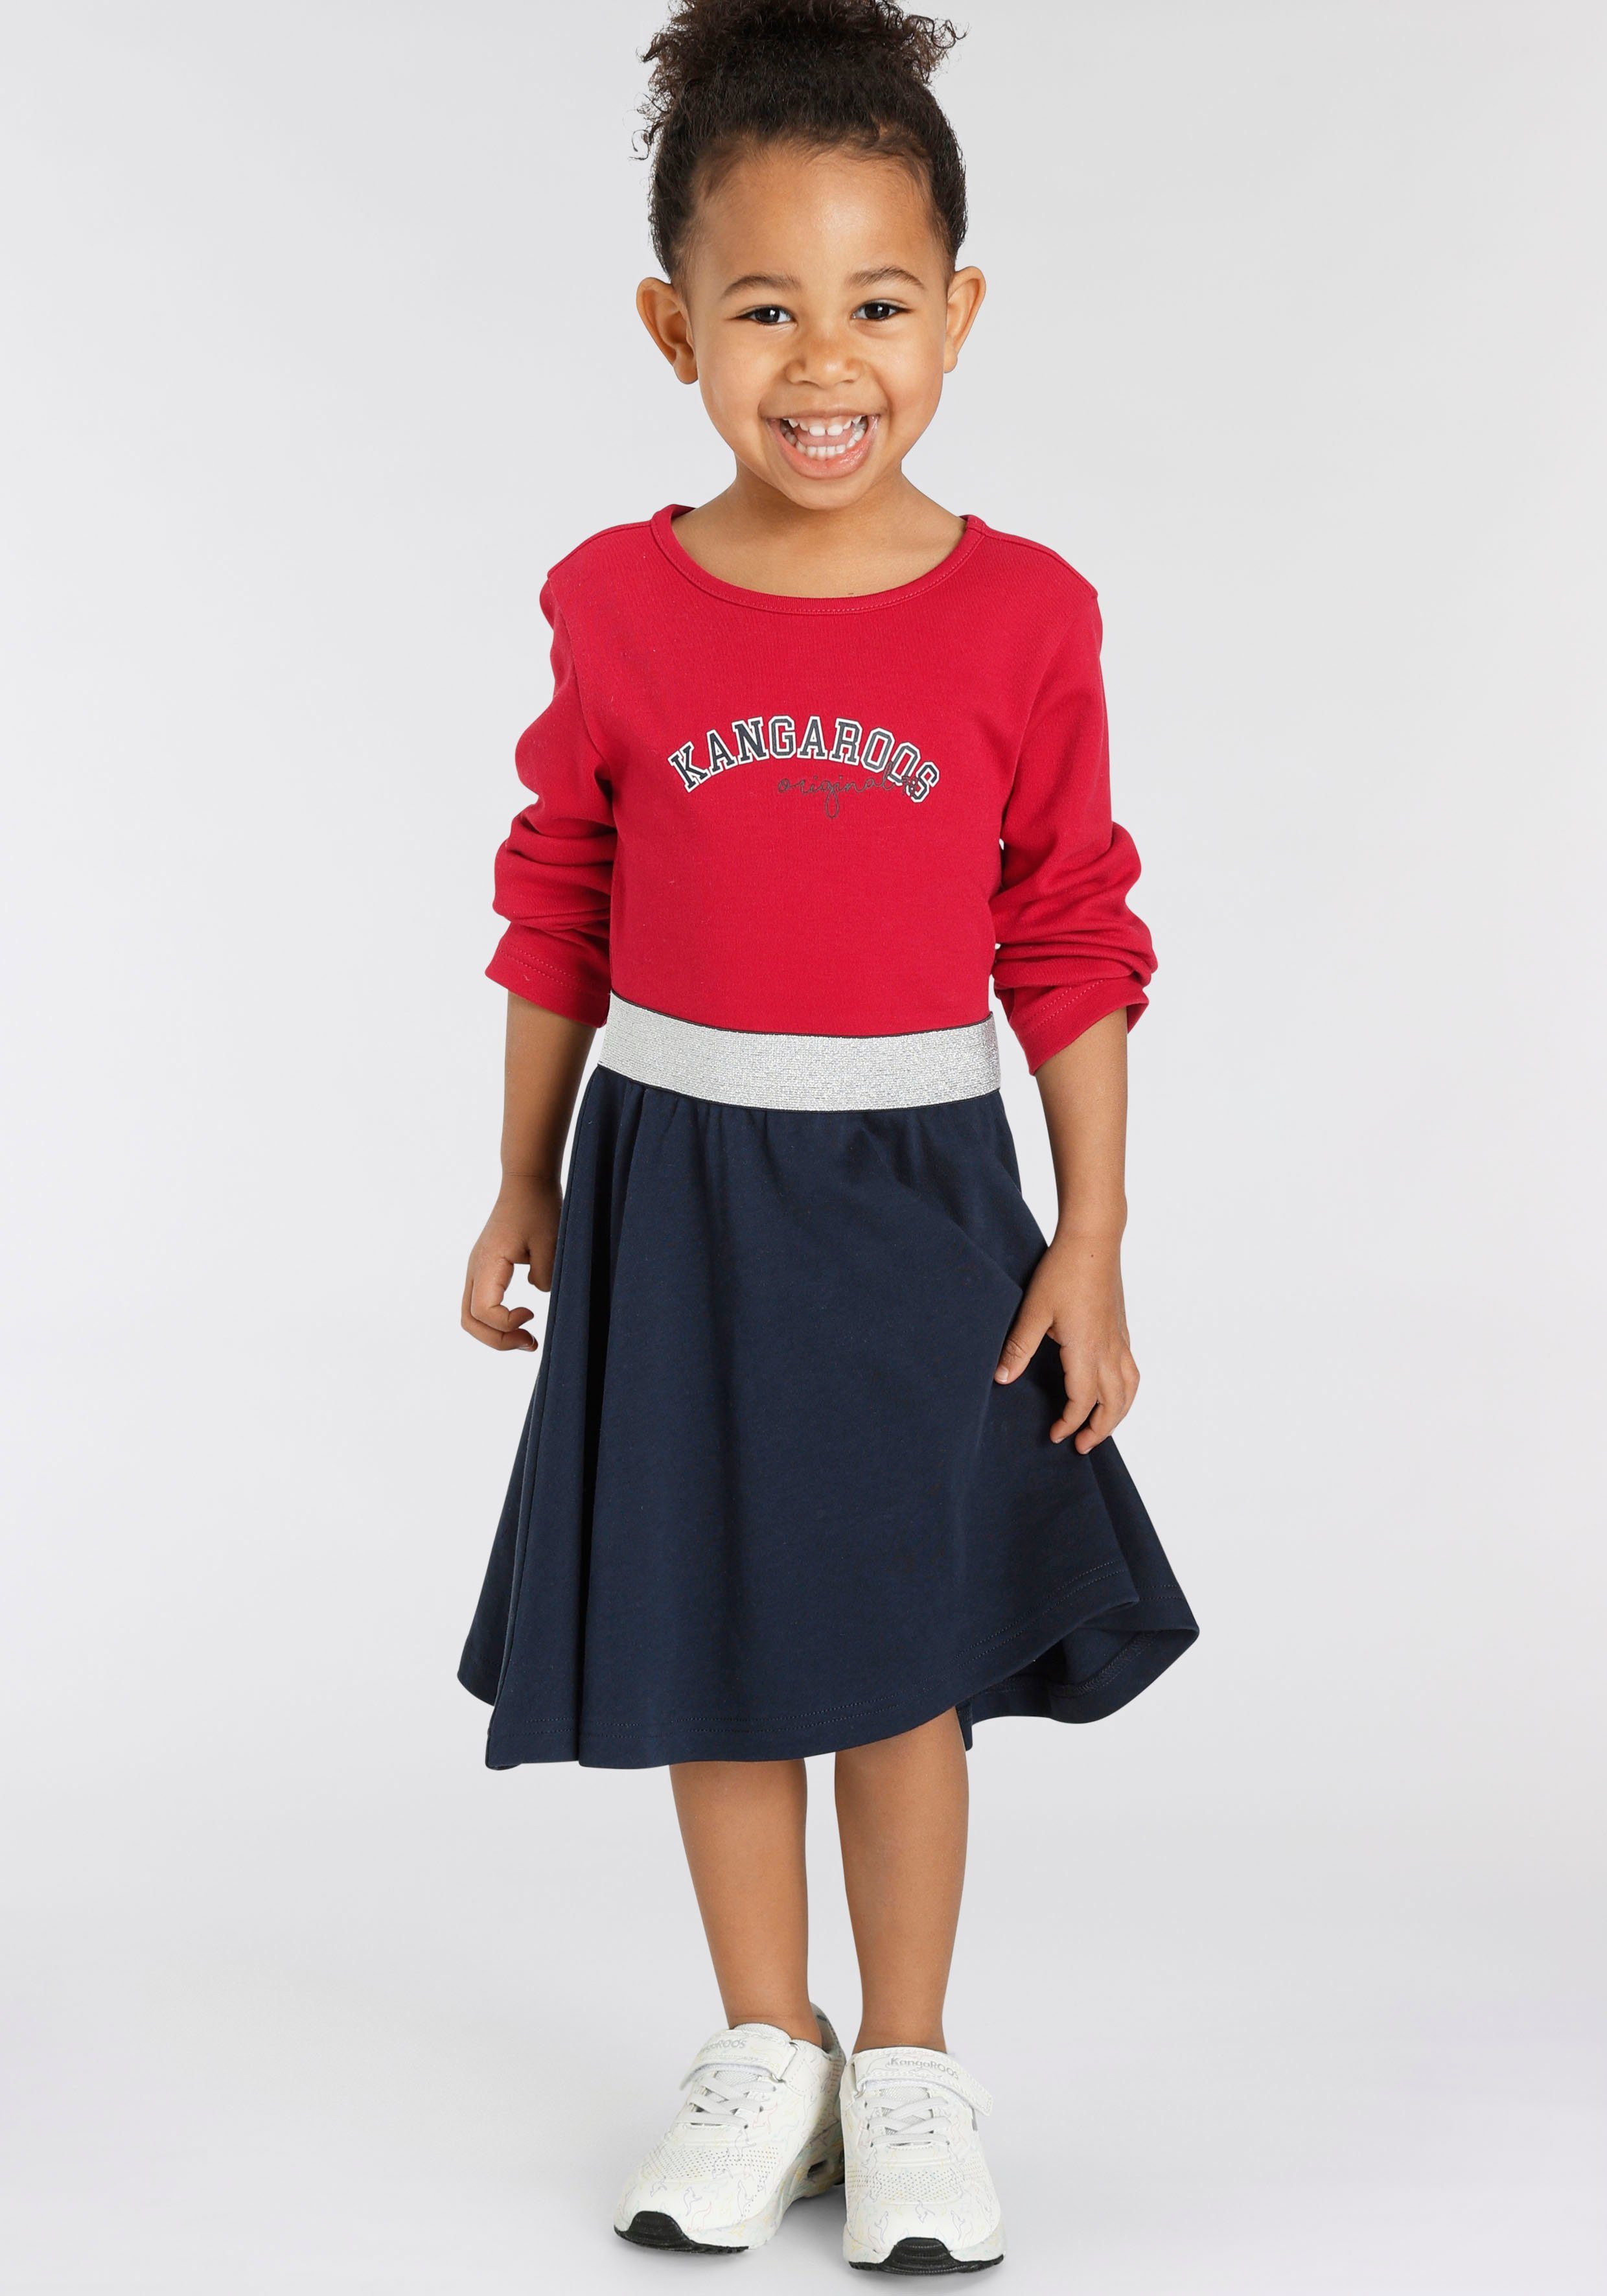 KangaROOS Jerseykleid Kleine elastischem mit Glitzerband Mädchen